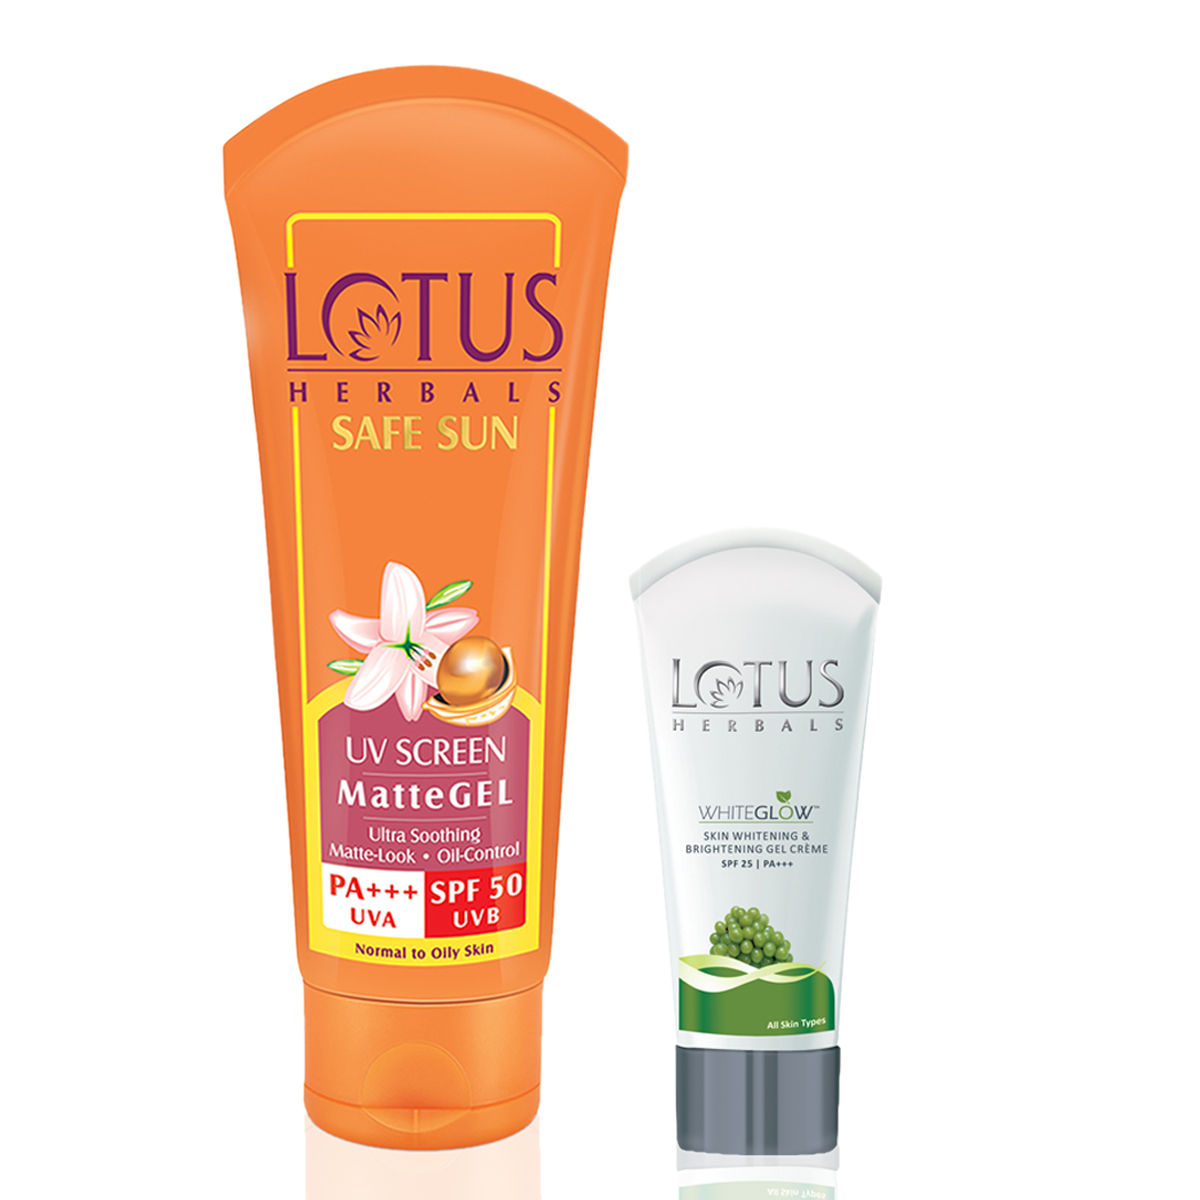 Buy Lotus Herbals Combo Pack - Safe Sun Mattegel SPF-50 & Whiteglow Gel Creme SPF 25 (50 g + 18 g) - Purplle